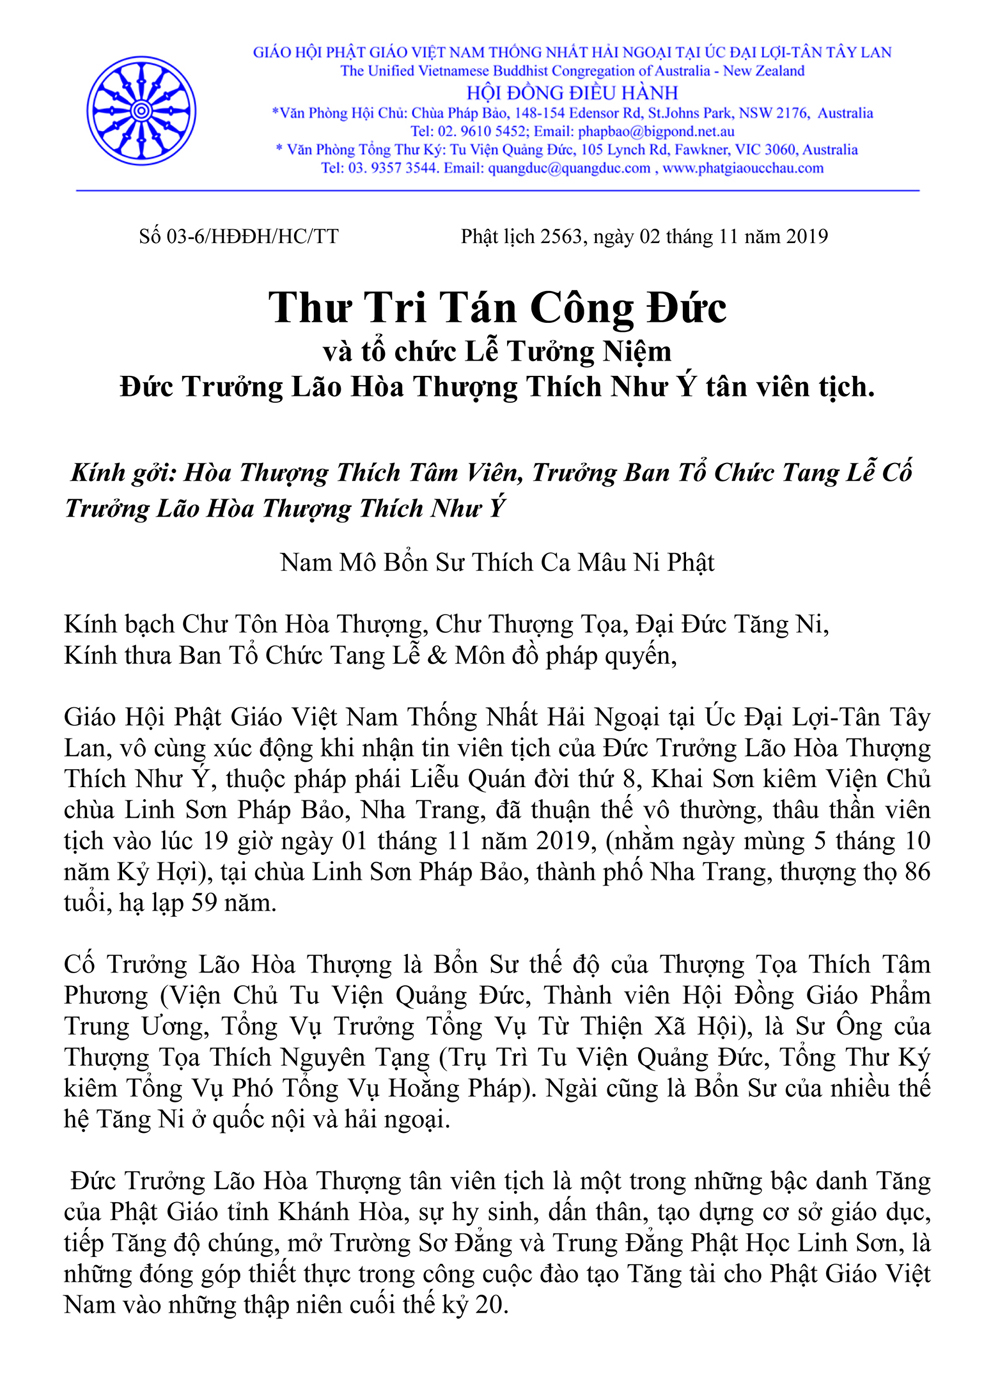 1_a_thu tri tan cong duc_HT Thich Nhu Y